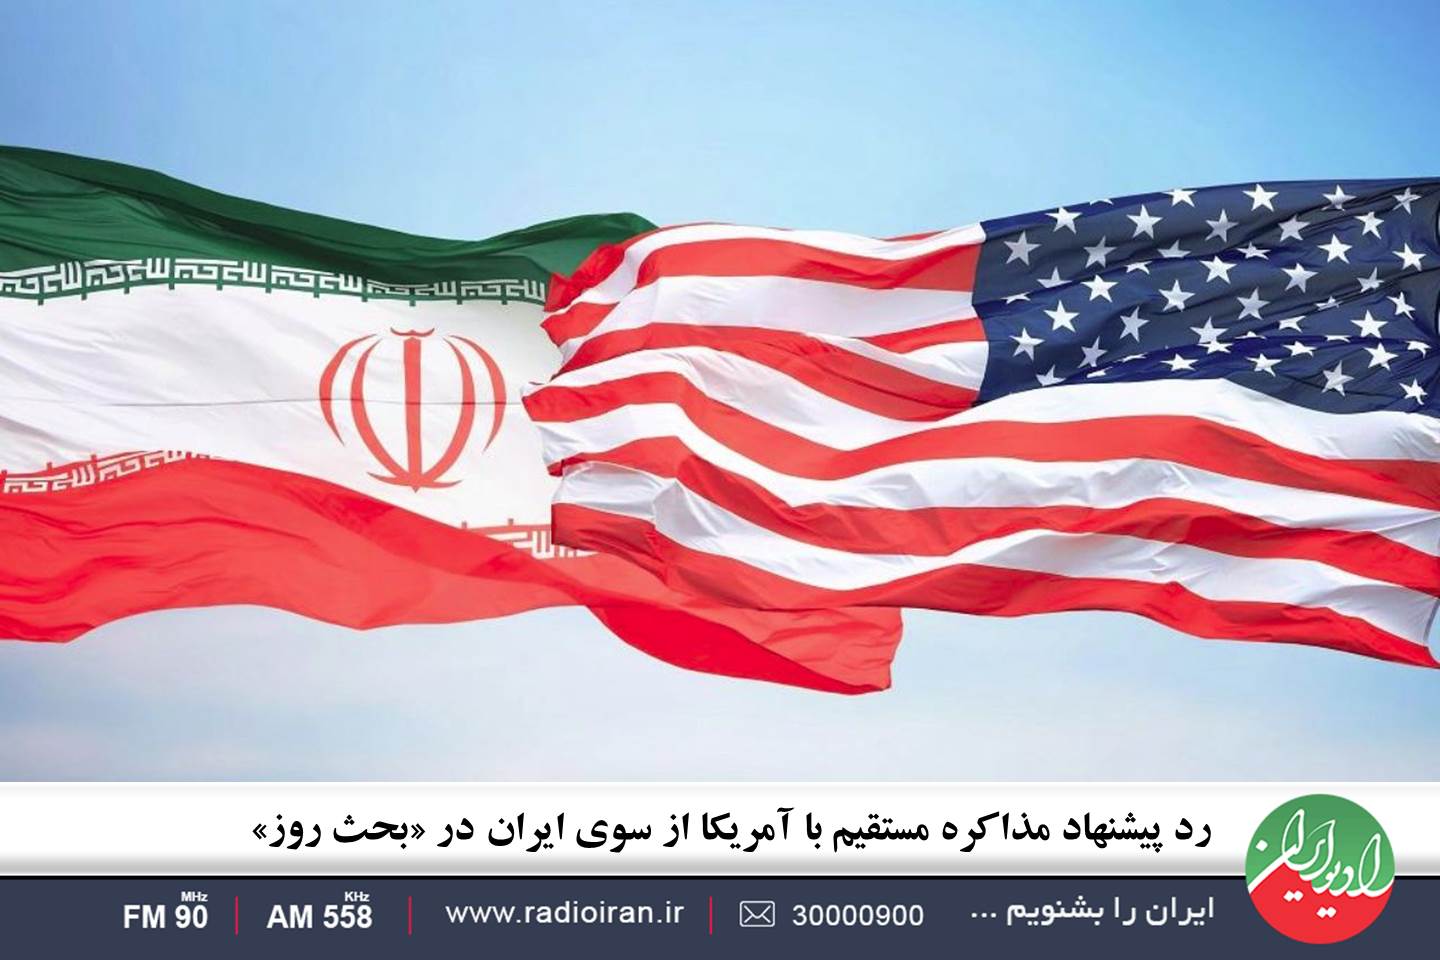 رد پیشنهاد مذاکره مستقیم با آمریکا از سوی ایران در «بحث روز»